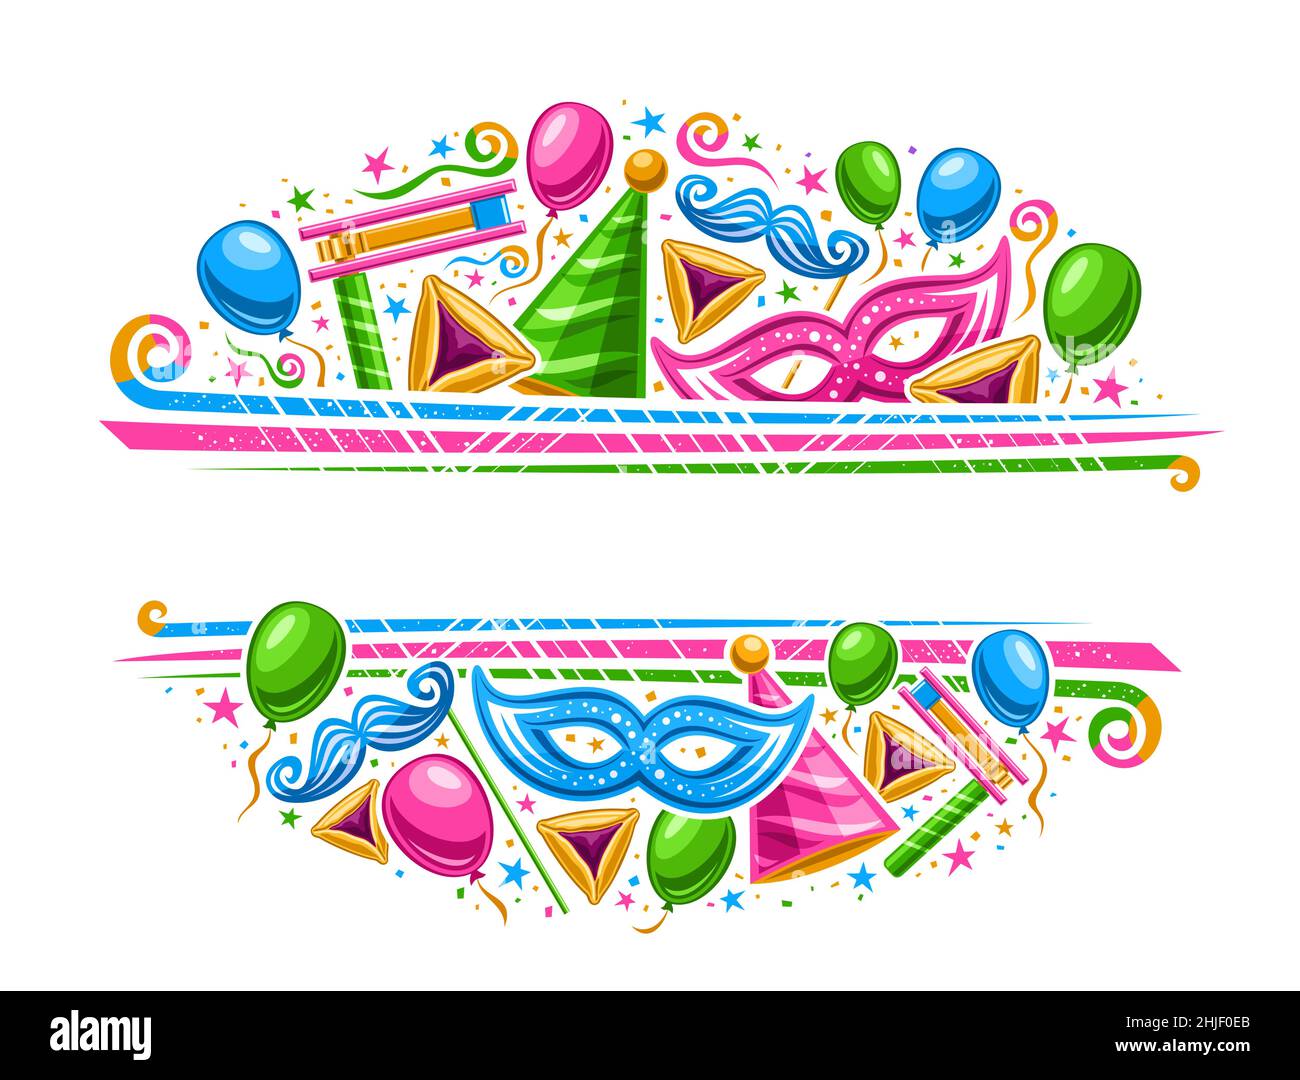 Bordo vettoriale per Purim Carnival con copyspace per testo, coupon orizzontale con illustrazione di varietà palloncini colorati, confetti decorativi e sw Illustrazione Vettoriale